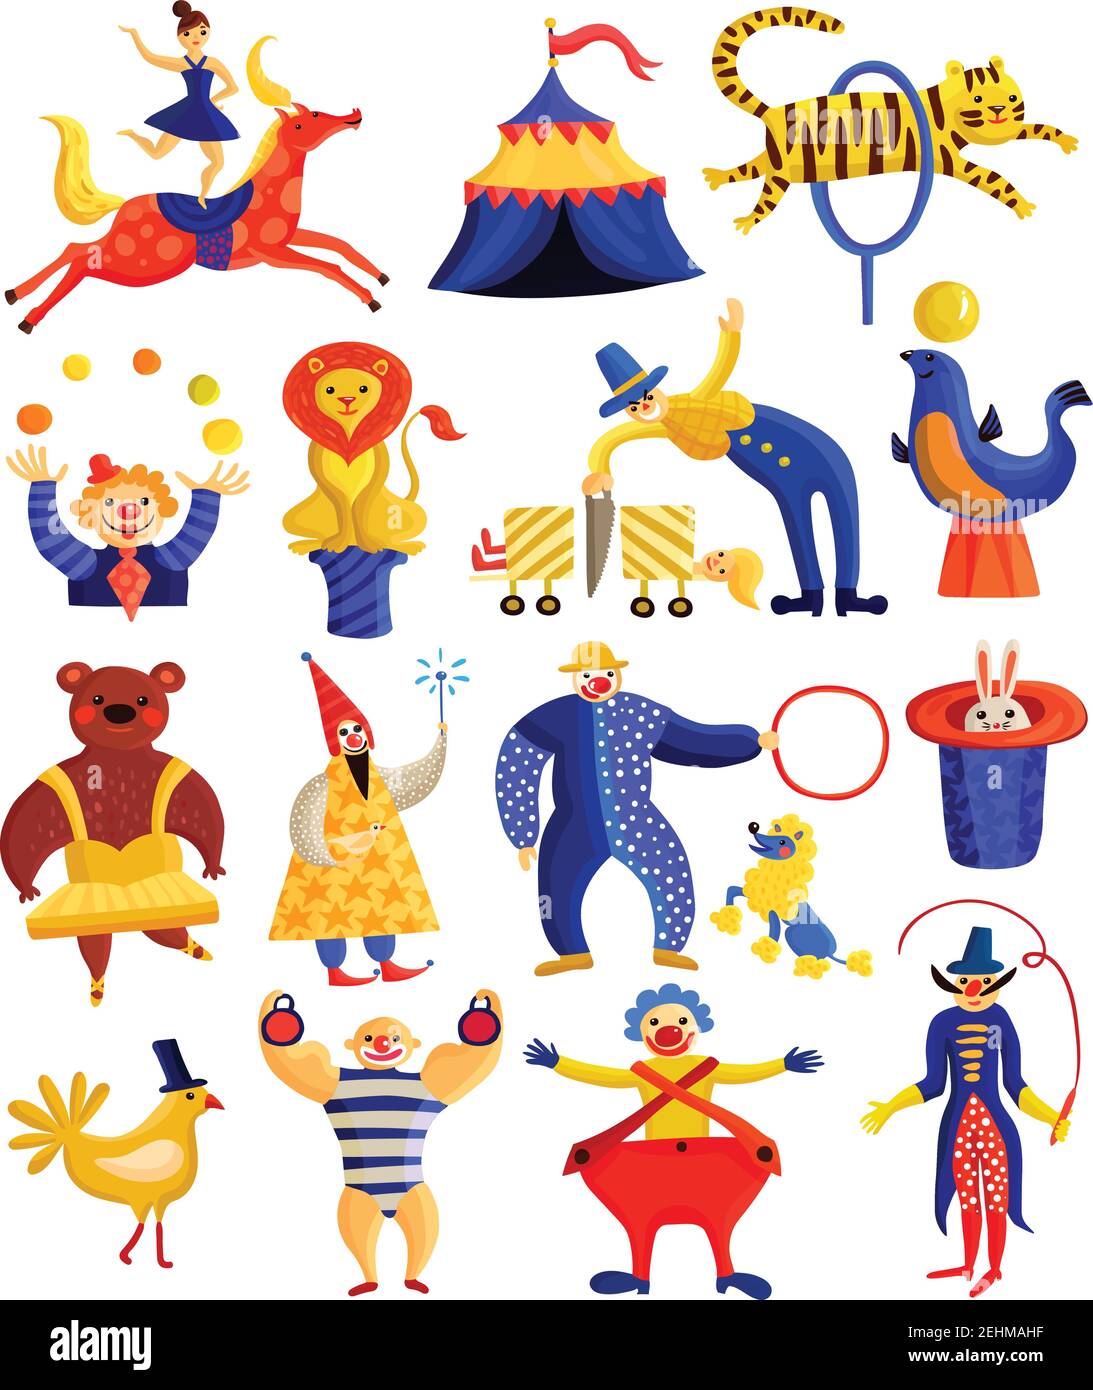 Collection d'artistes de cirque, y compris le cavalier, les clowns, les illusionnistes avec des tours, l'homme fort, les animaux entraînés illustration de vecteur isolé Illustration de Vecteur